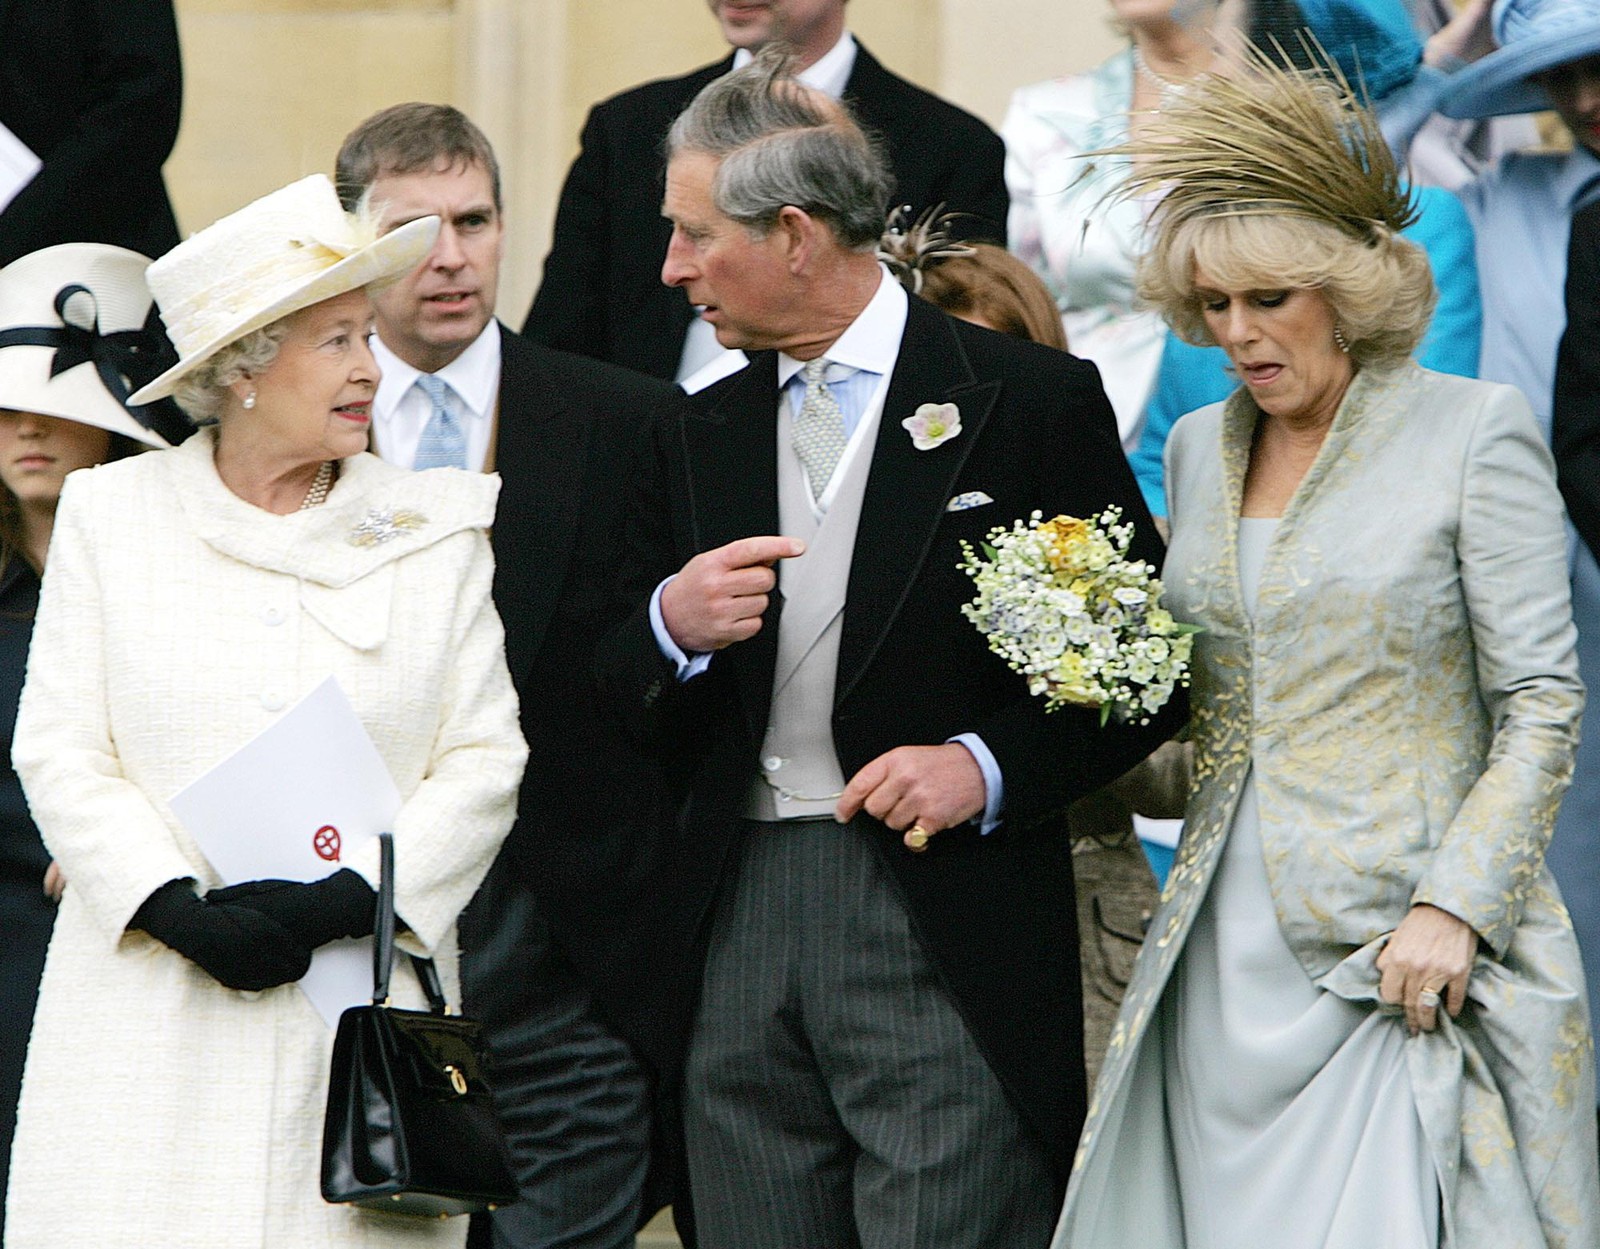 No casamento civil do filho Charles com a duquesa de Cornwall, Camilla, em abril de 2005. — Foto: Alastair Grant/AP